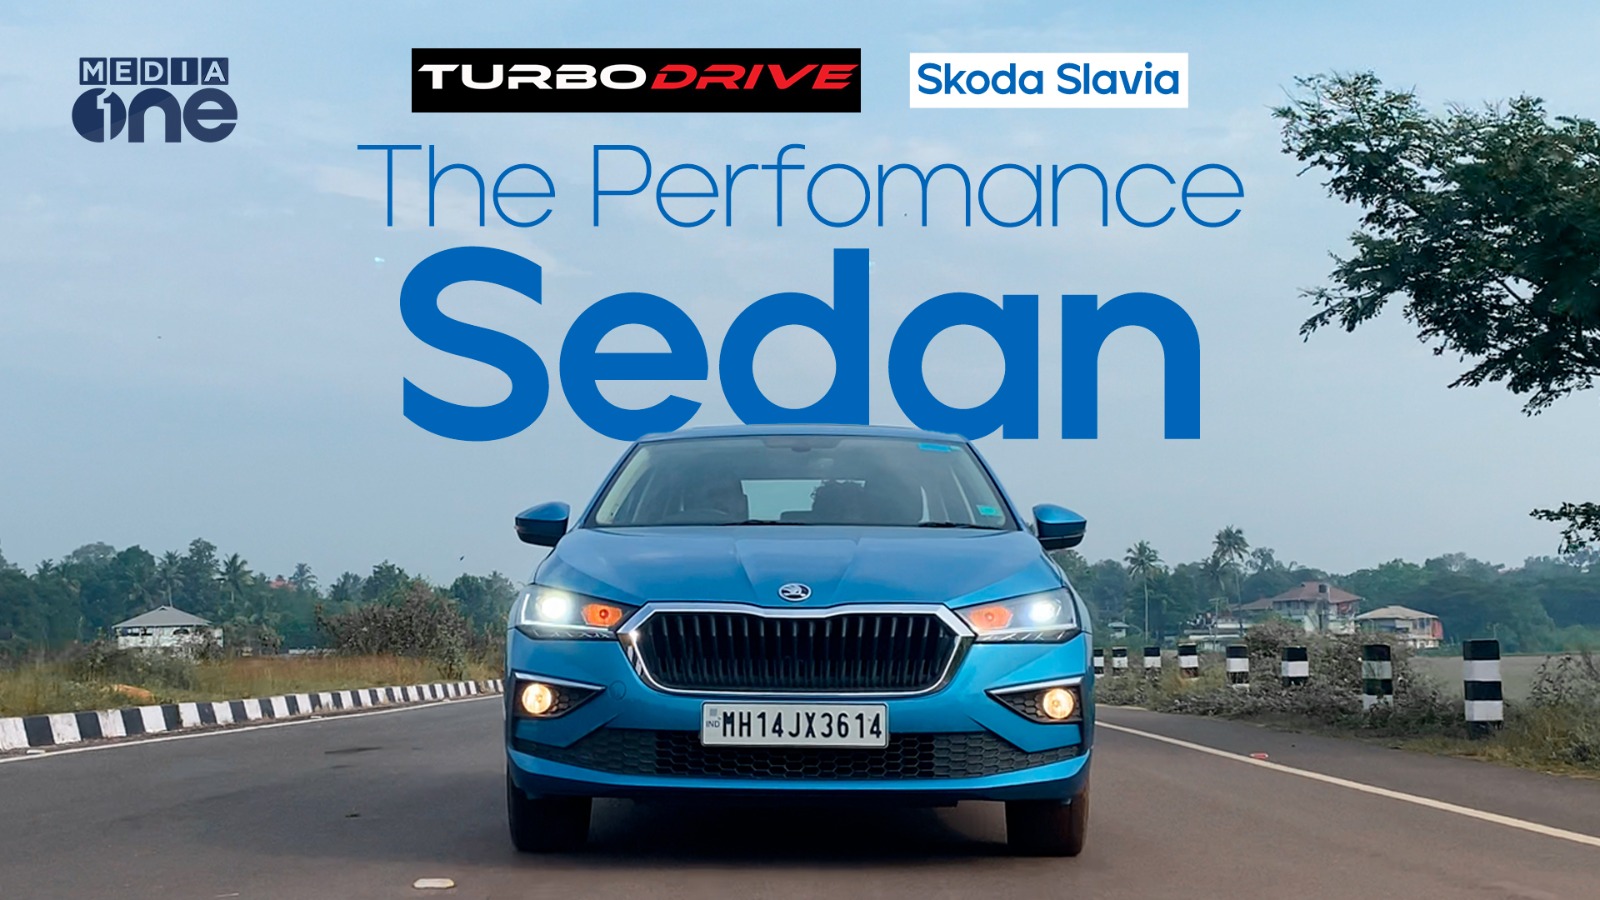 Skoda Slavia Turbodrive TV Auto Show